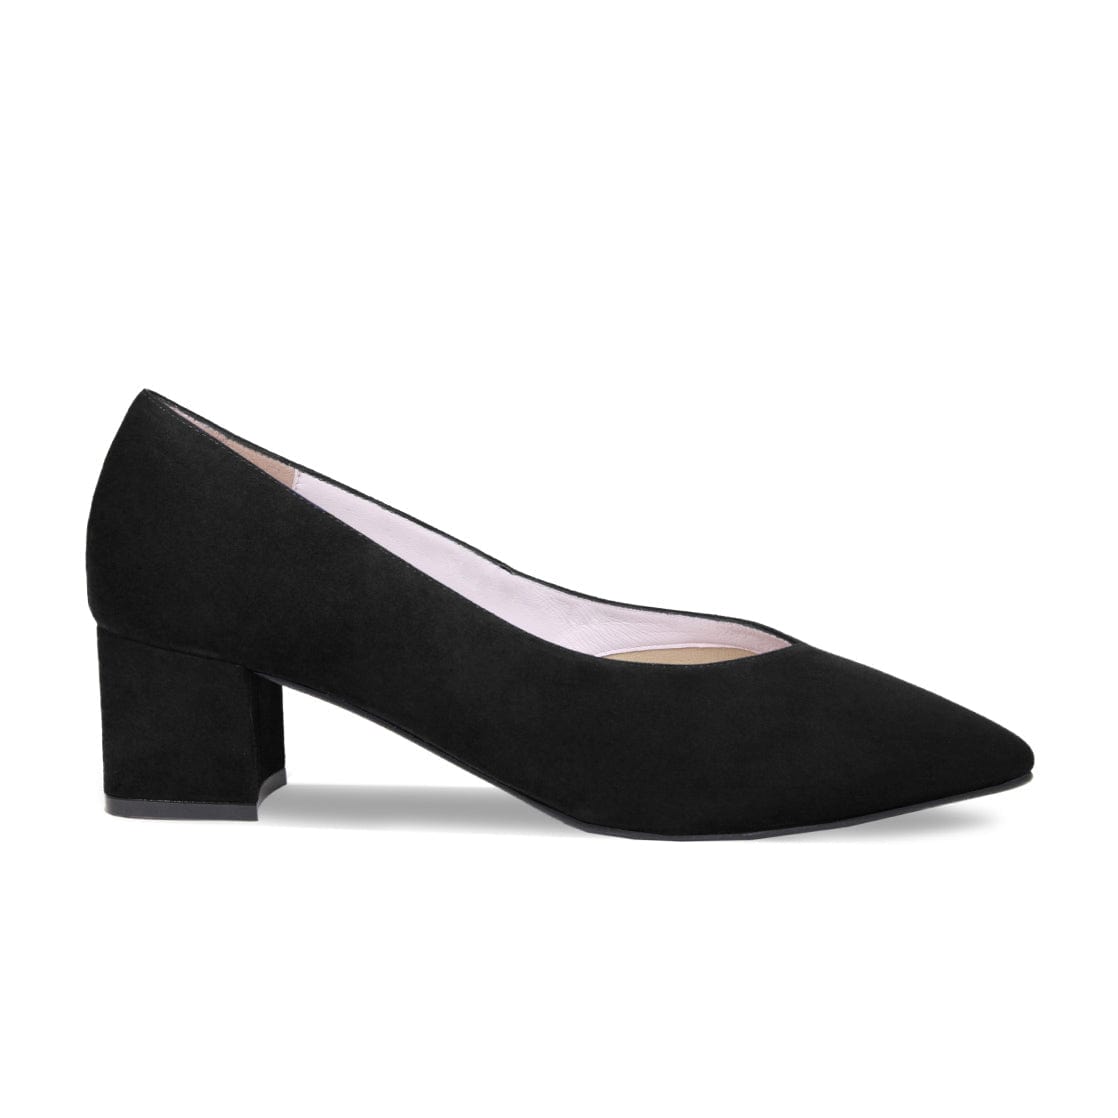 Stiletto High Heels Black Suede Pumps | Black high heels, Stiletto heels, Black  heels